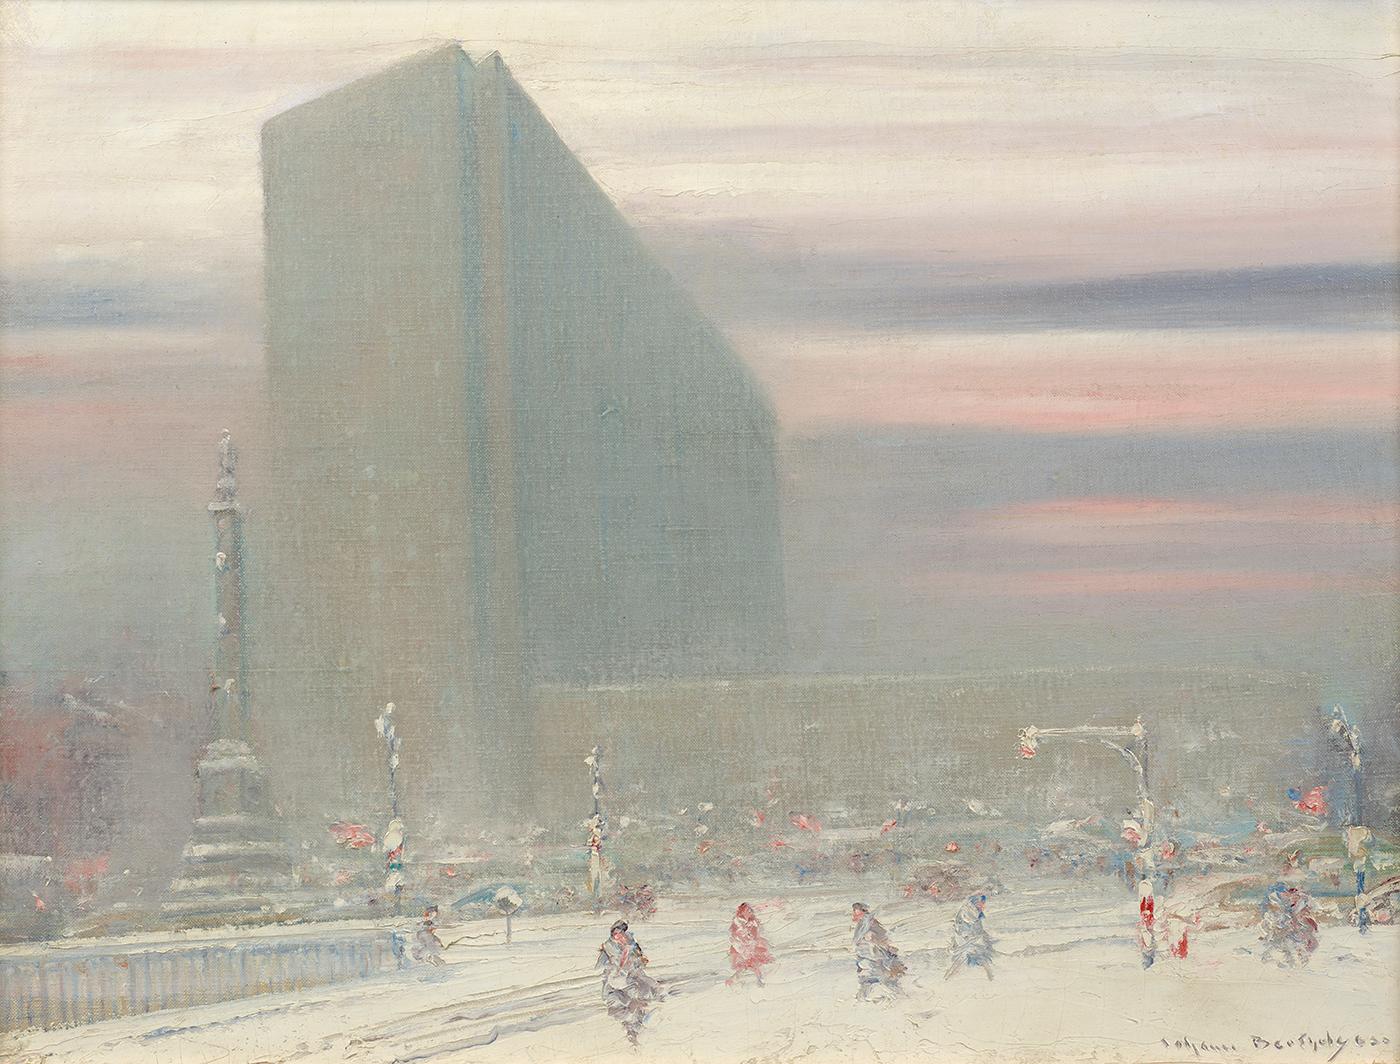 Coliseum de New York - Painting de Johann Berthelsen